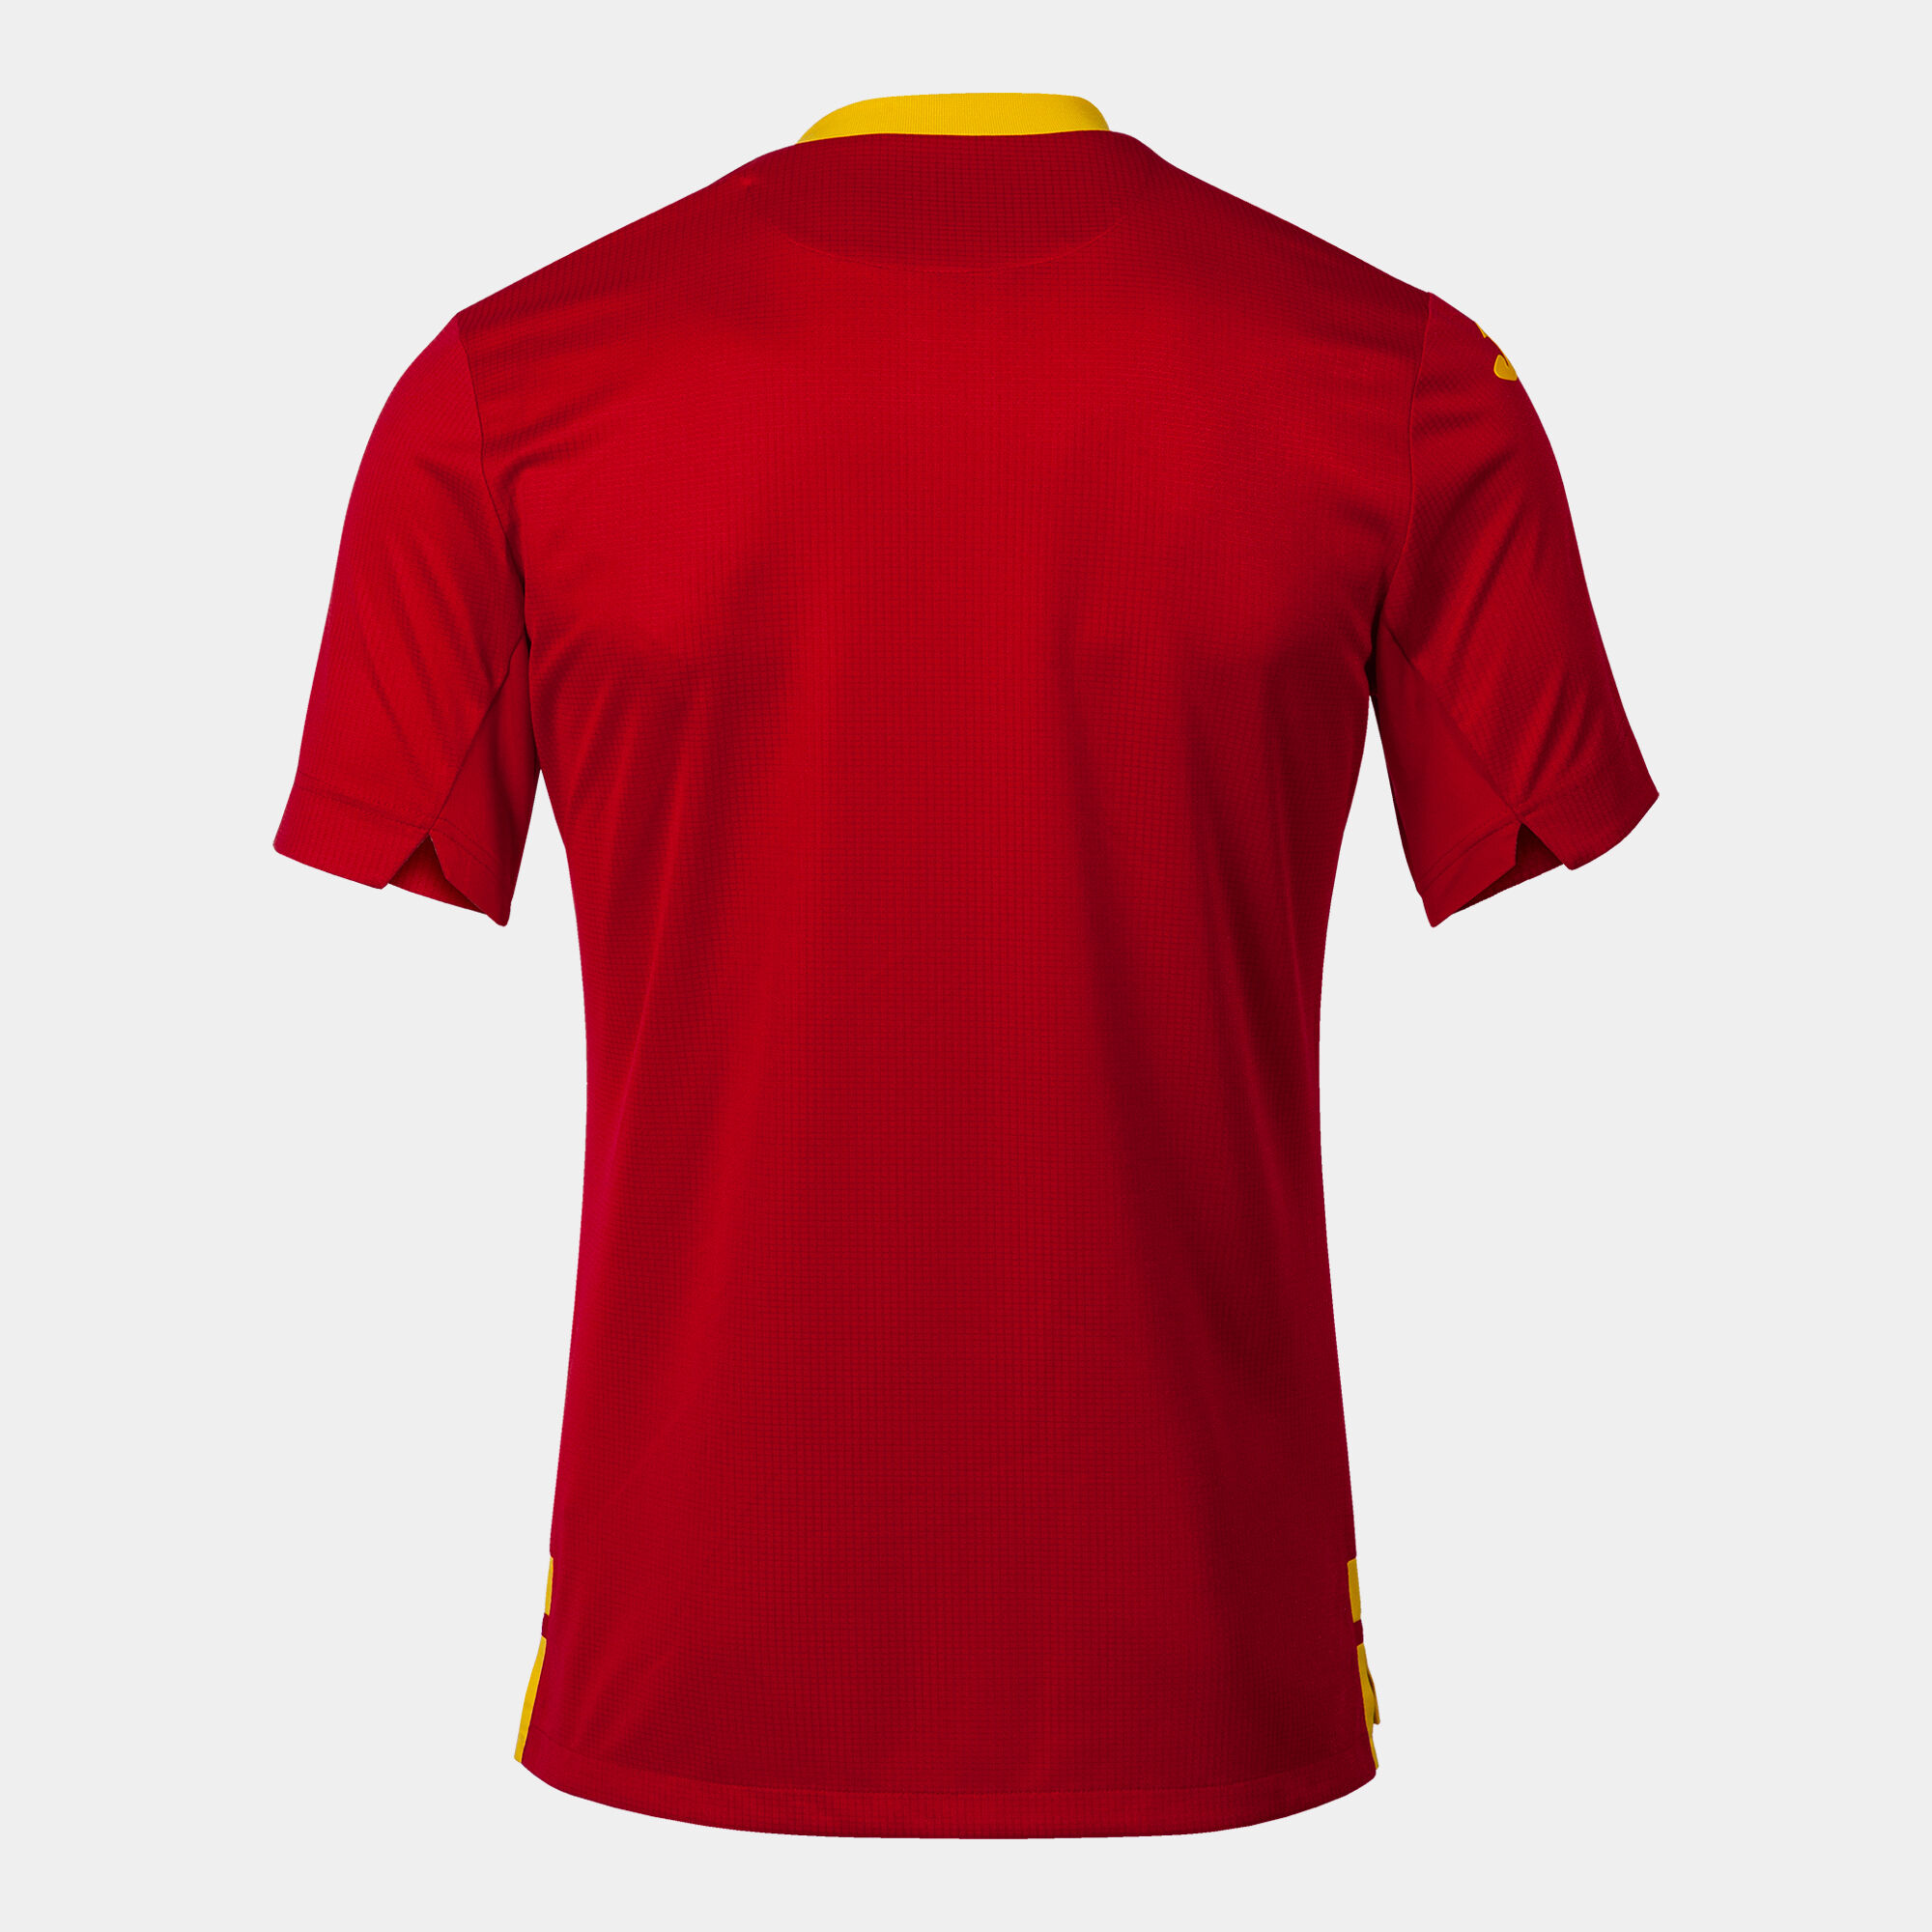 T-shirt manga curta 1º equipamento Seleção Espanhola De Futebol De Salão